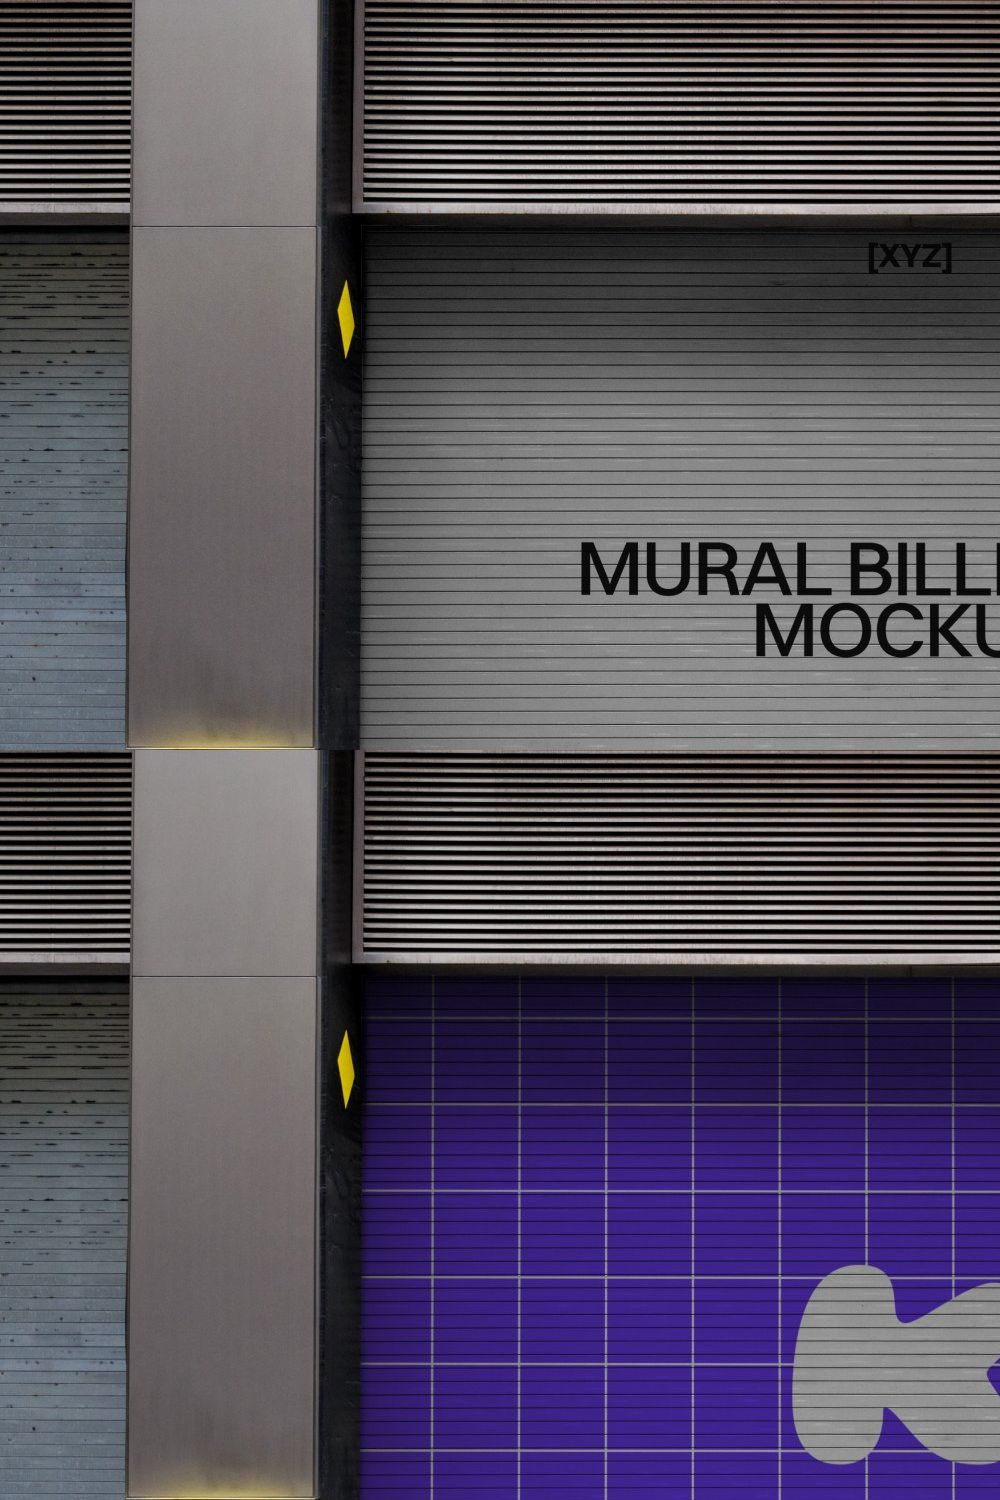 Urban Mural Billboard Mockup 09 pinterest preview image.